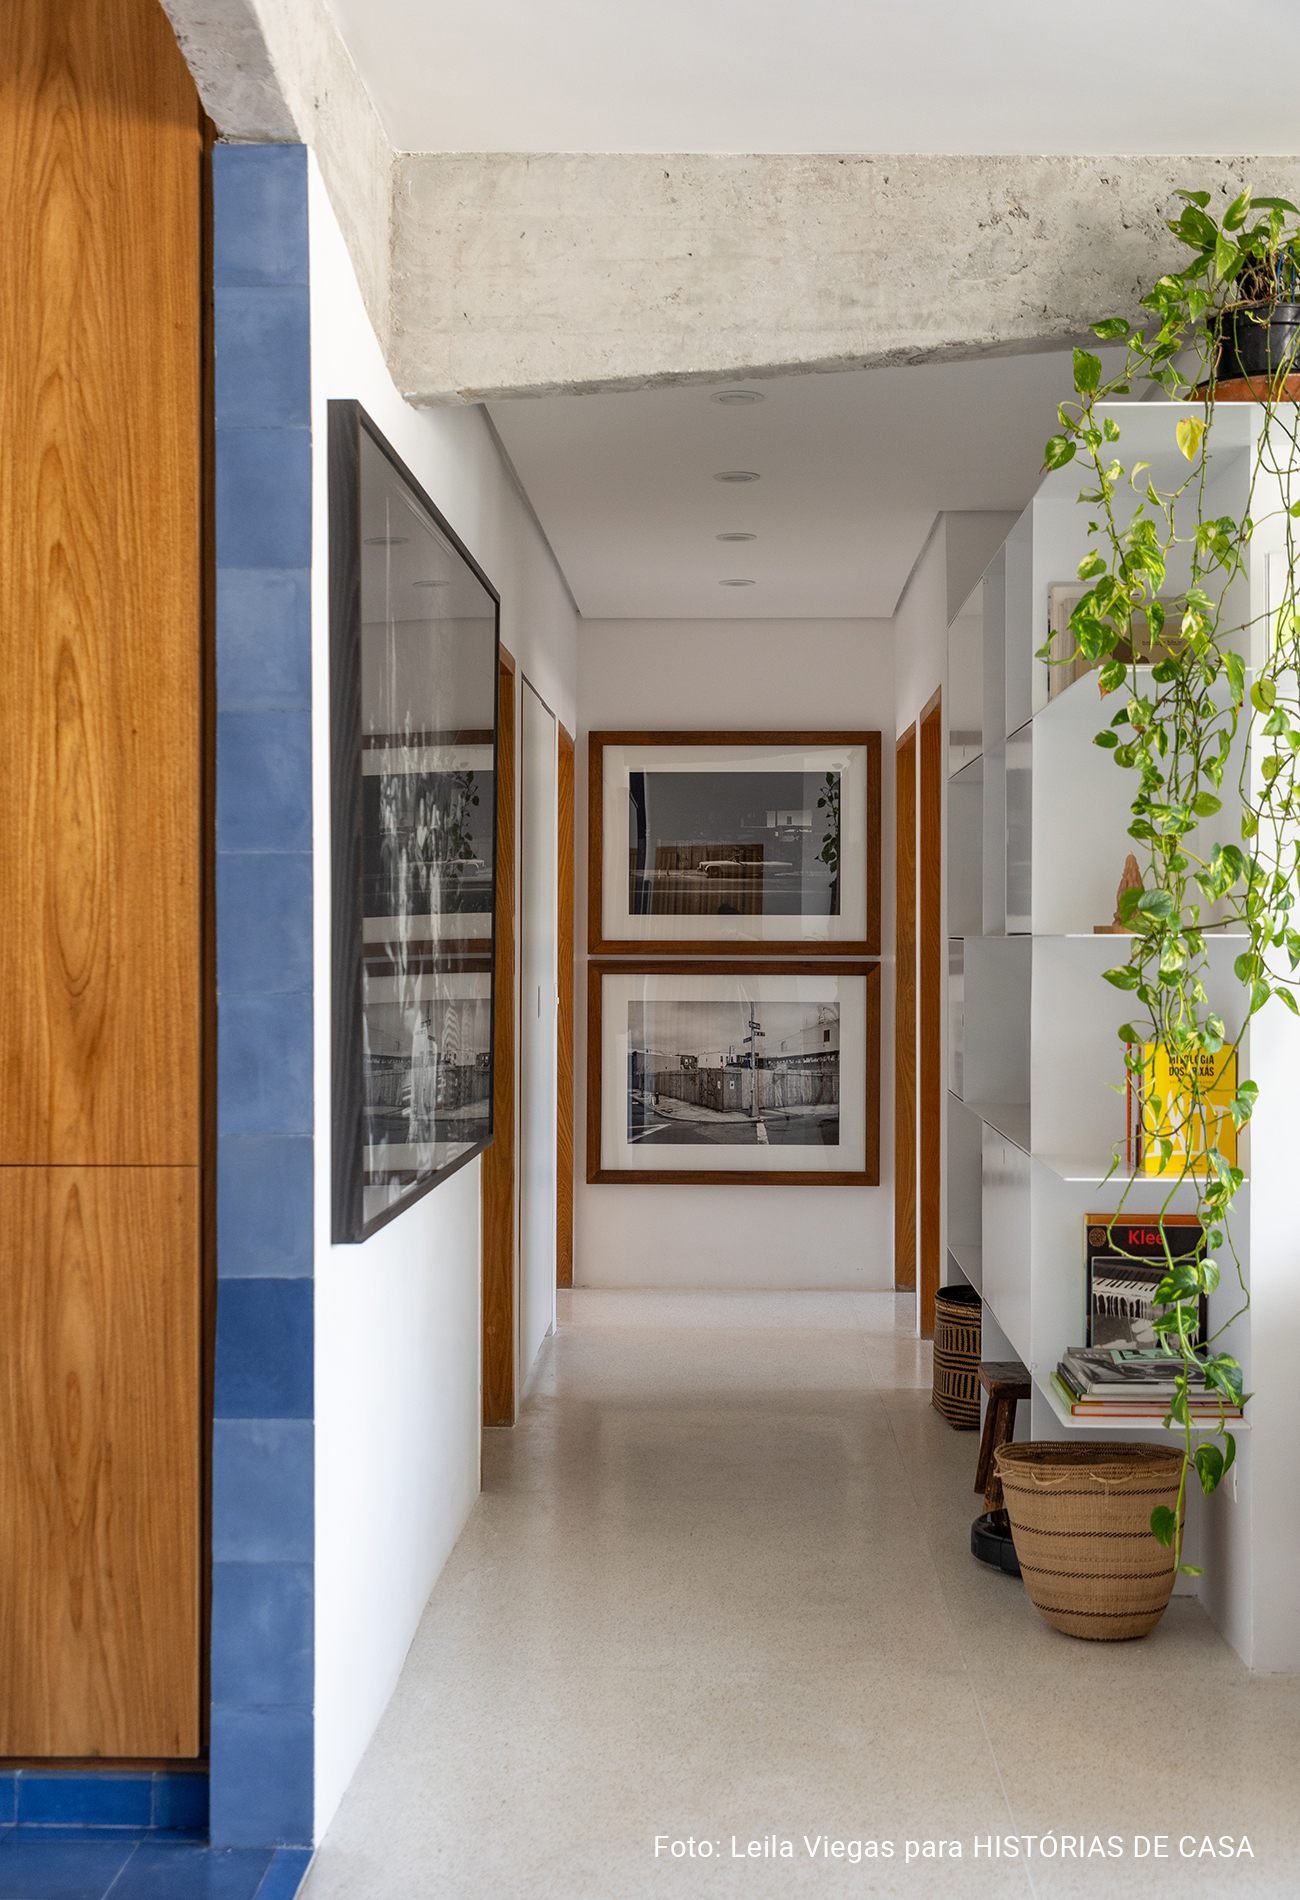 Antes e Depois: apartamento reformado com cozinha colorida integrada e muito conforto.